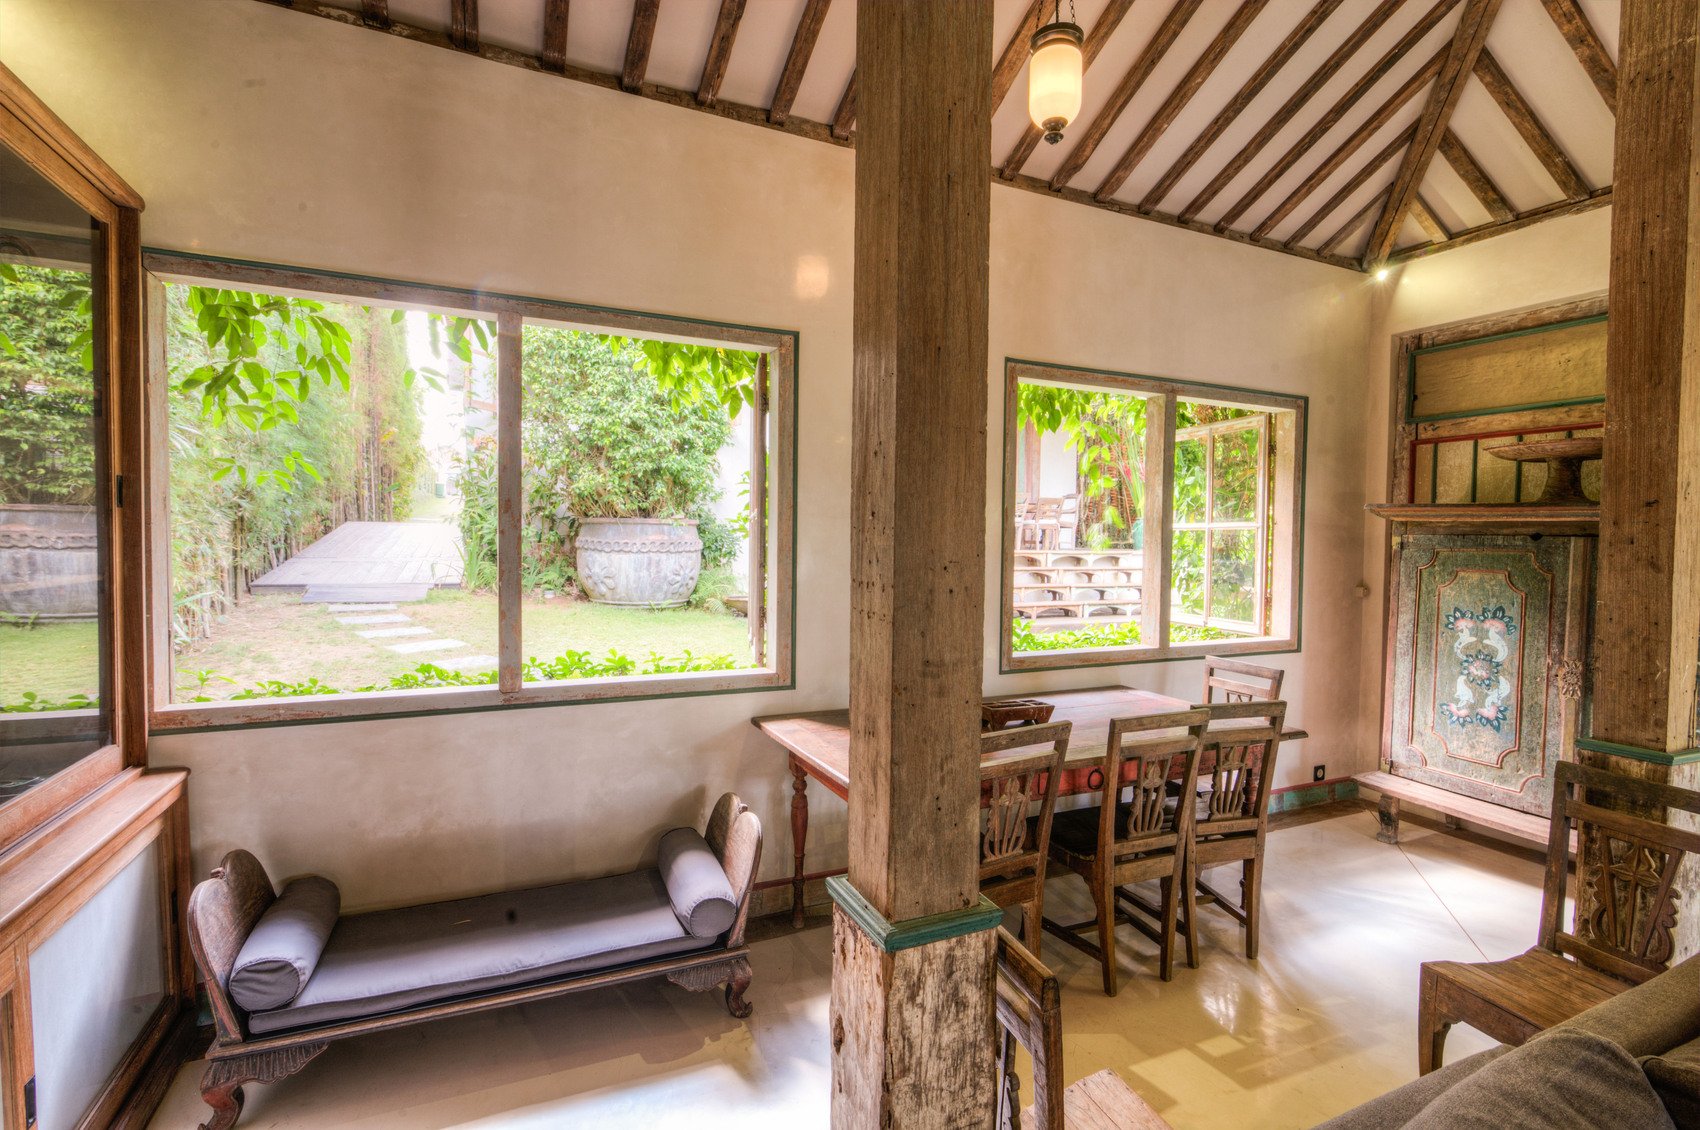 Villa Artis - Villa de luxe Bali - hôtel 5* Bali - chambre atypique